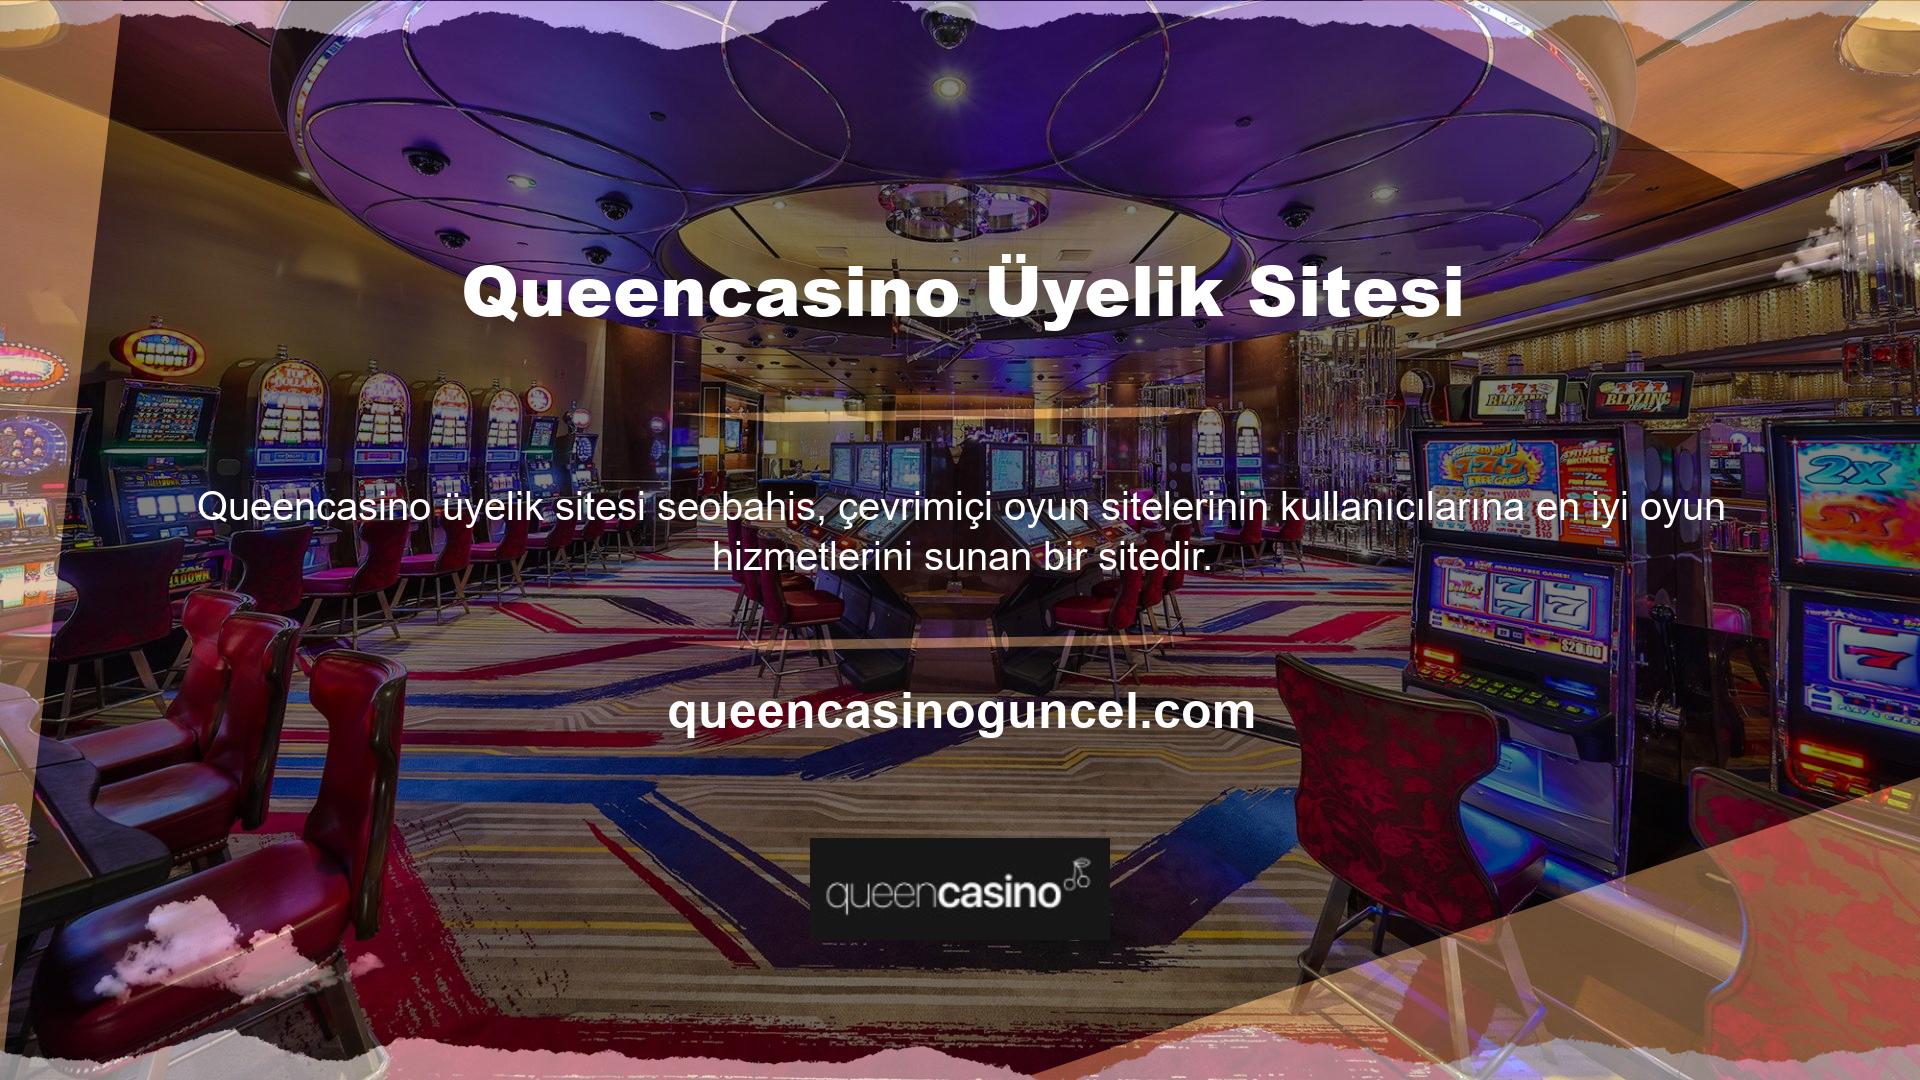 Queencasino, çevrimiçi oyun oynayan kişiler için birinci sınıf oyun çözümleri sunan bir web sitesidir